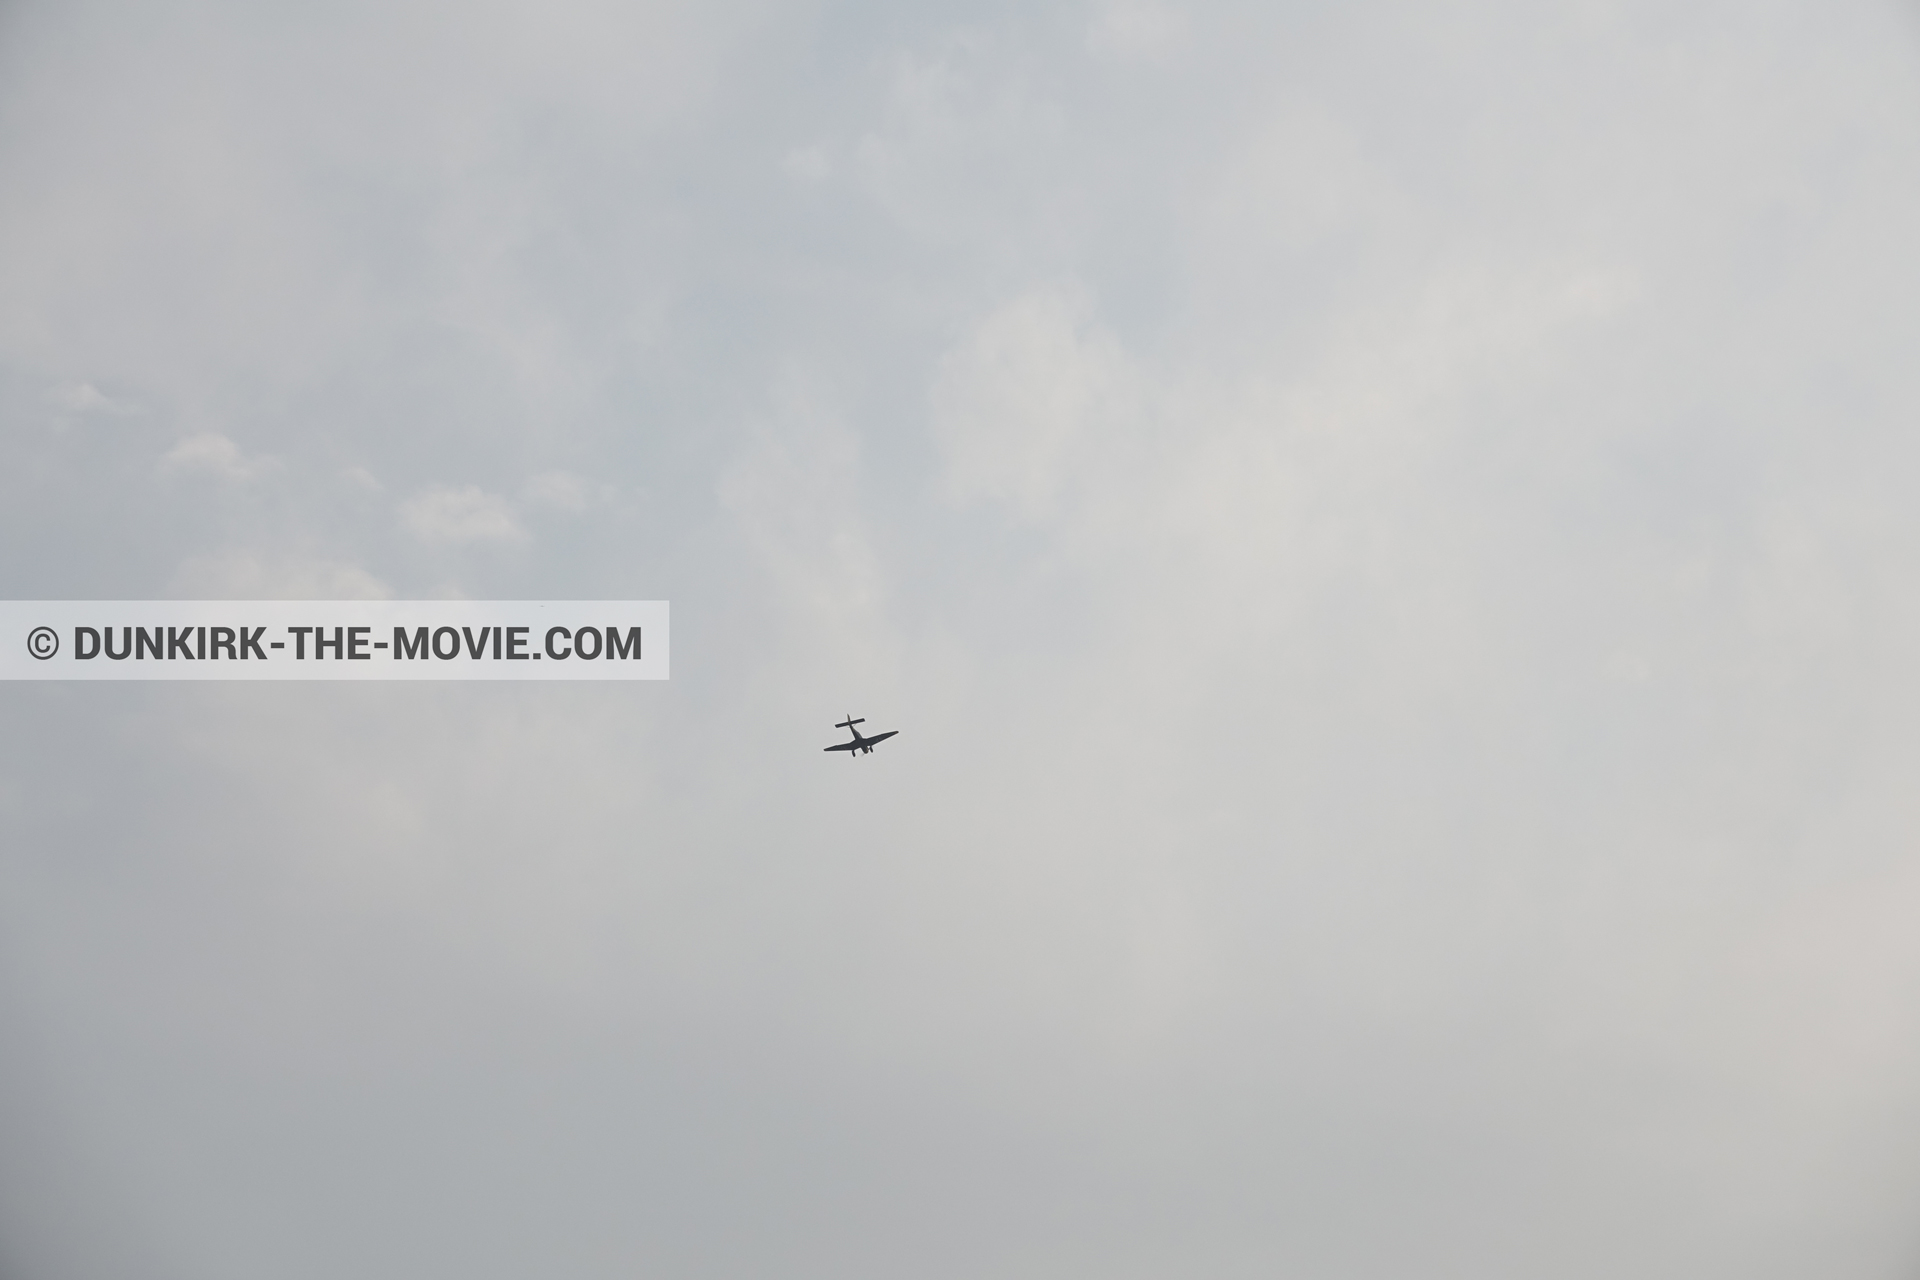 Photo avec avion, ciel gris,  des dessous du Film Dunkerque de Nolan